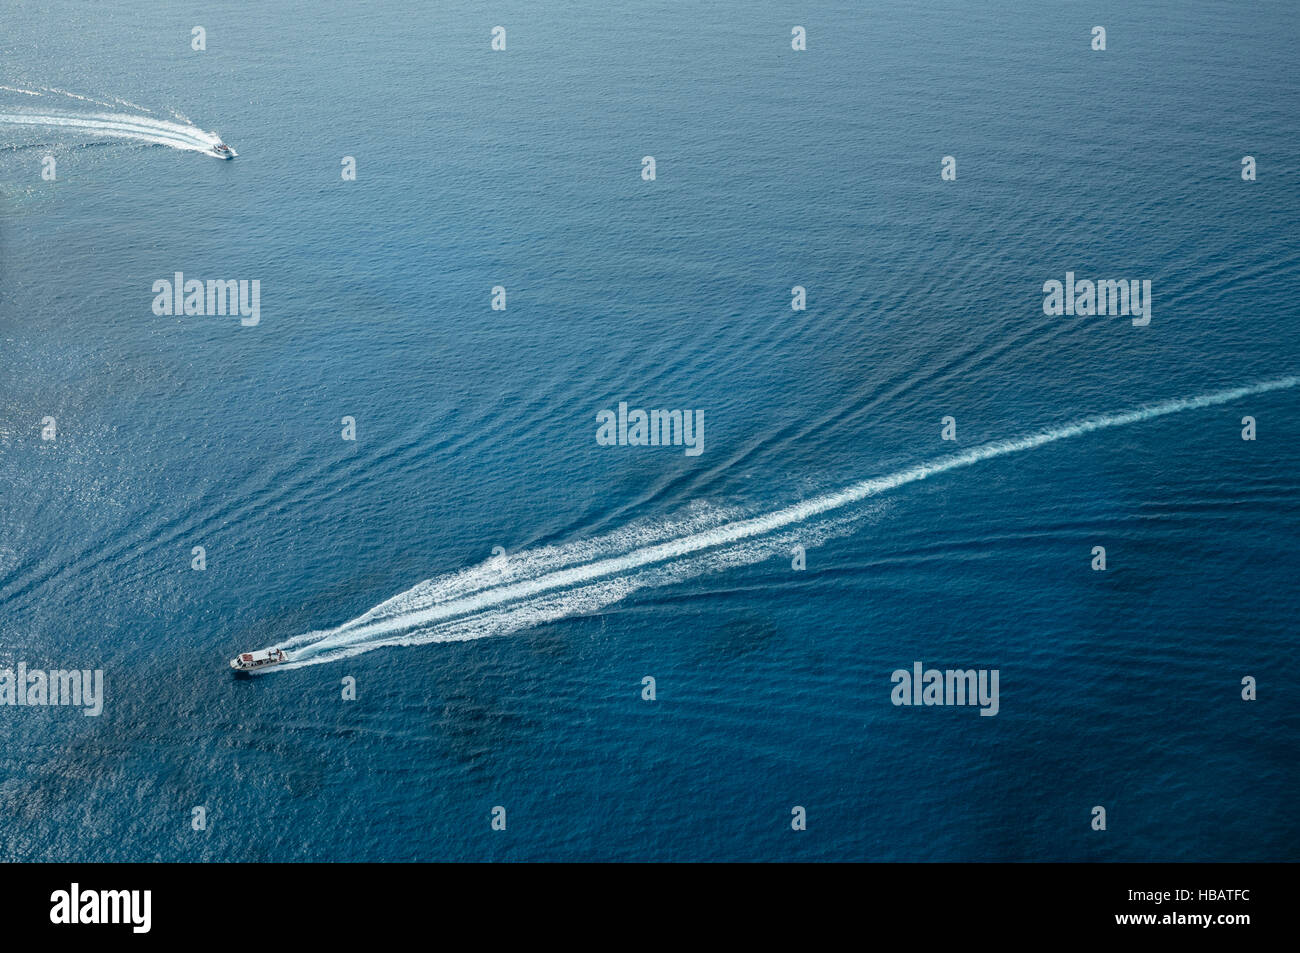 Vista aerea di barche lasciando sentieri nel mare, Zante Grecia Foto Stock